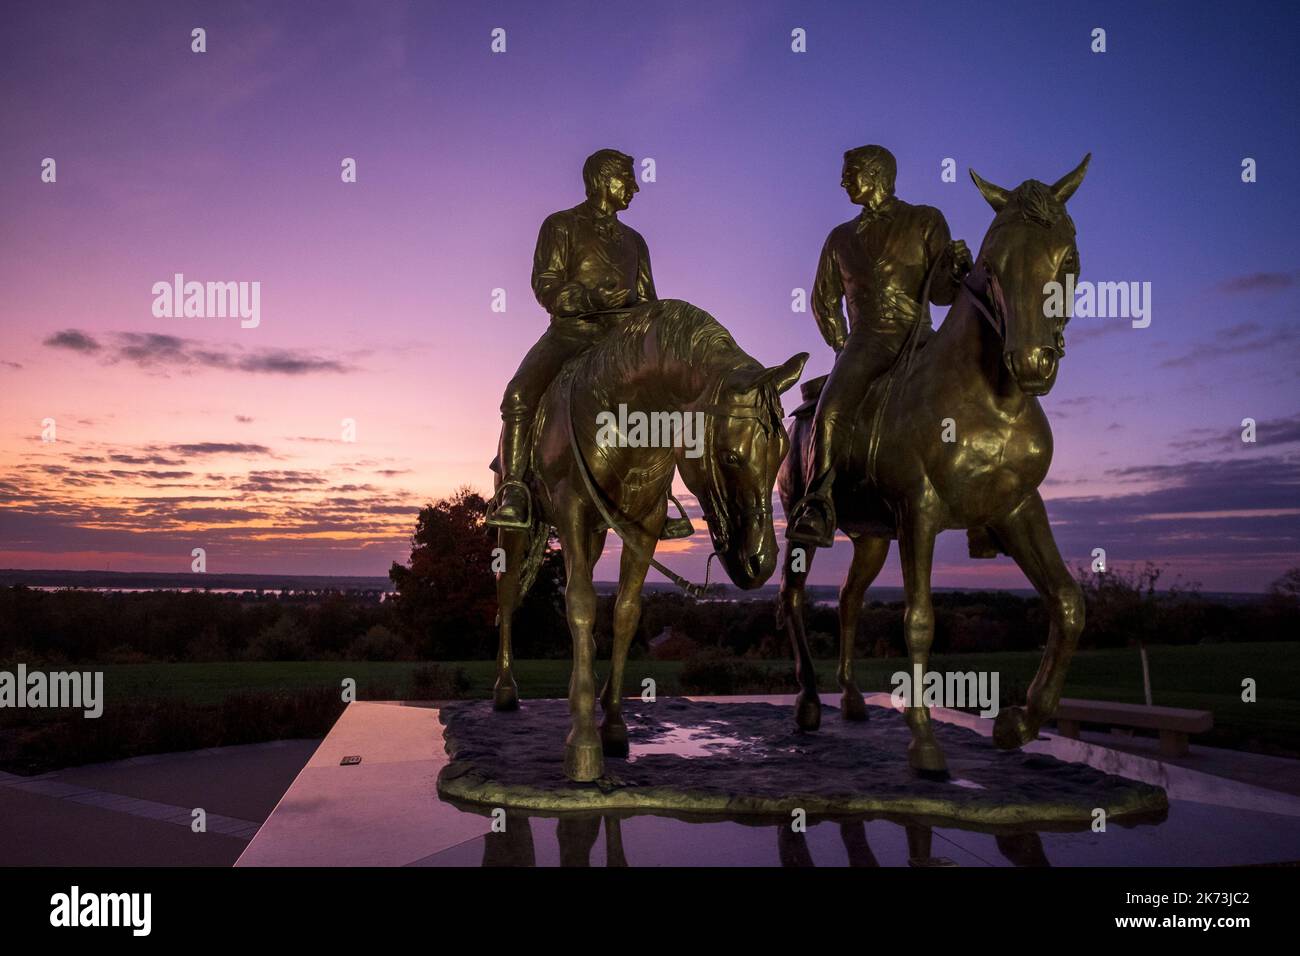 "The Prophet's Last Ride", statua del fondatore di Mormon Joseph Smith e di suo fratello Hyrum Smith a Nauvoo, Illinois; tramonto sul fiume Mississippi Foto Stock